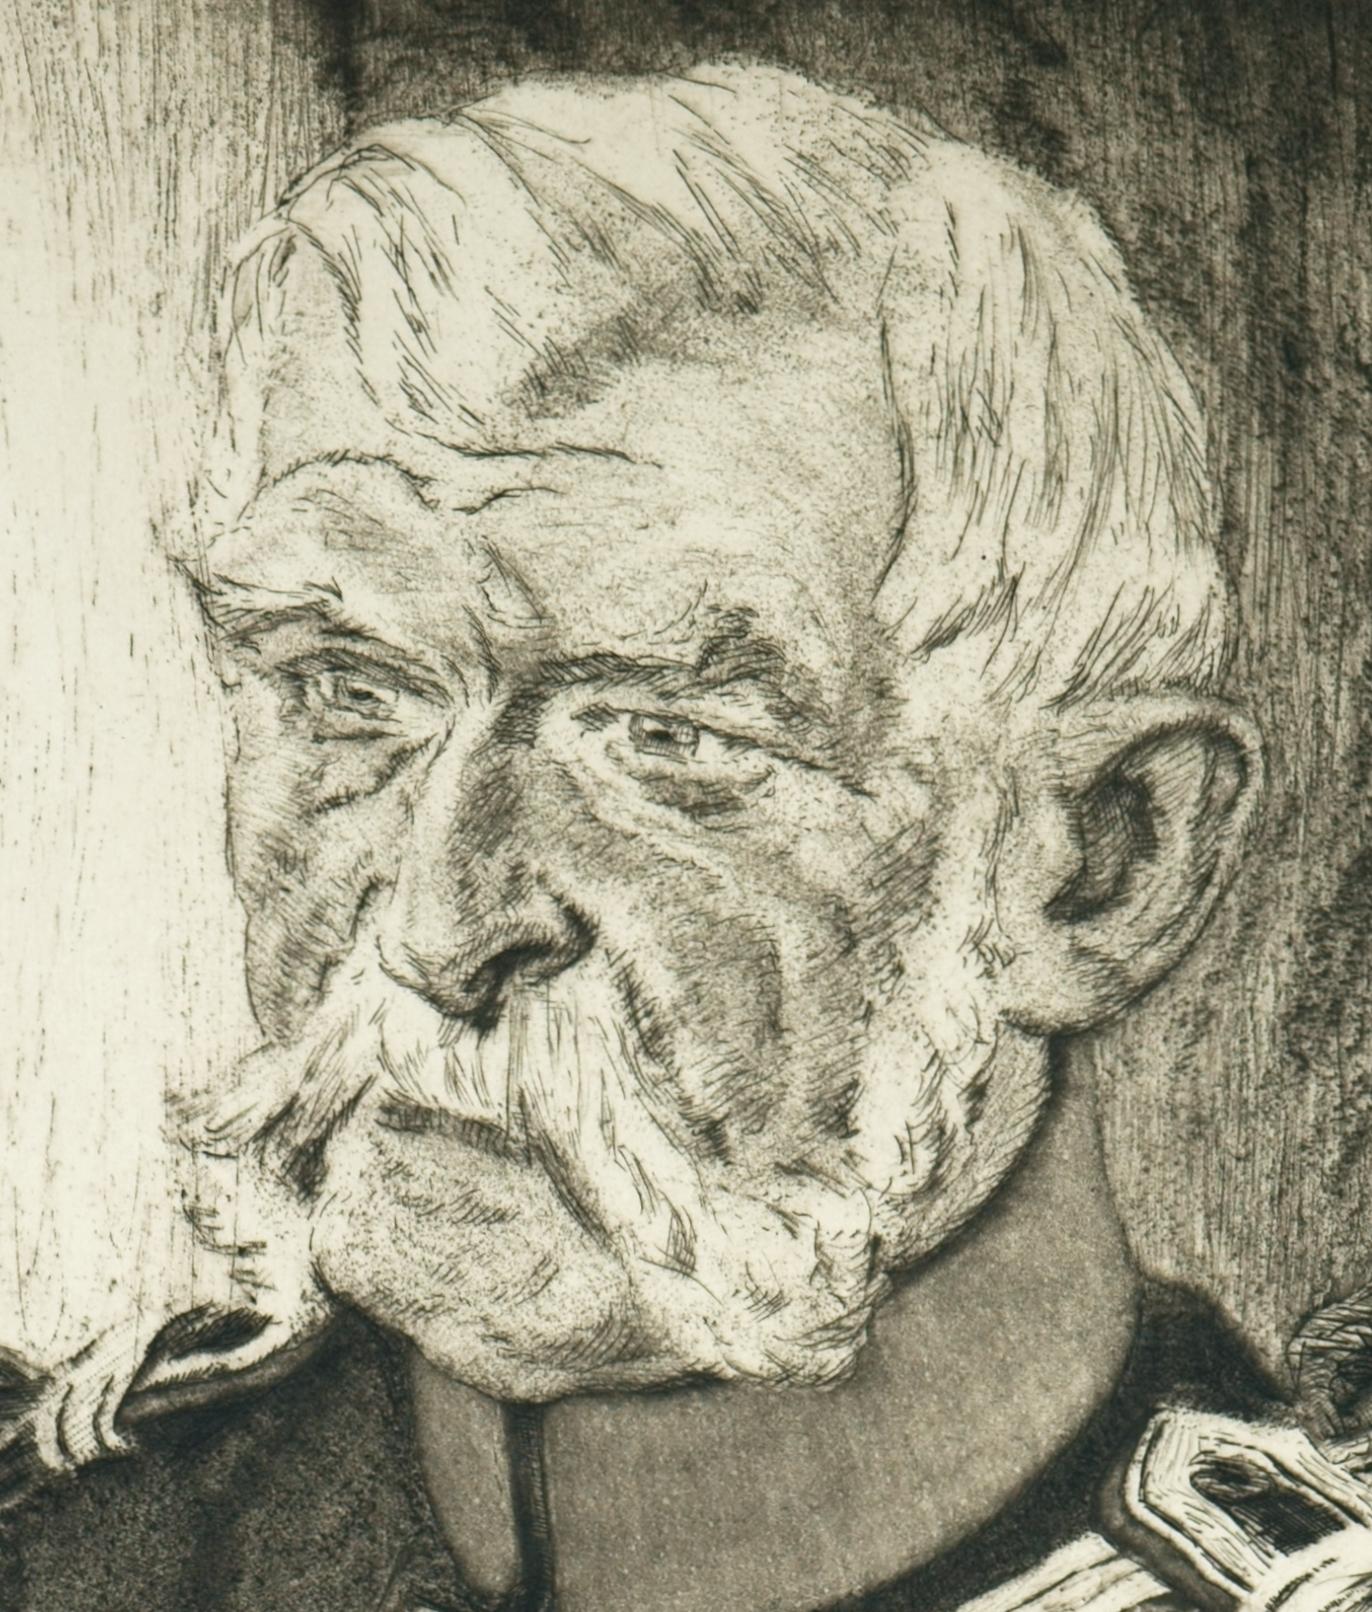 General Wilhelm von Blume - Visionary retrospective - - Print by Bernhard Pankok